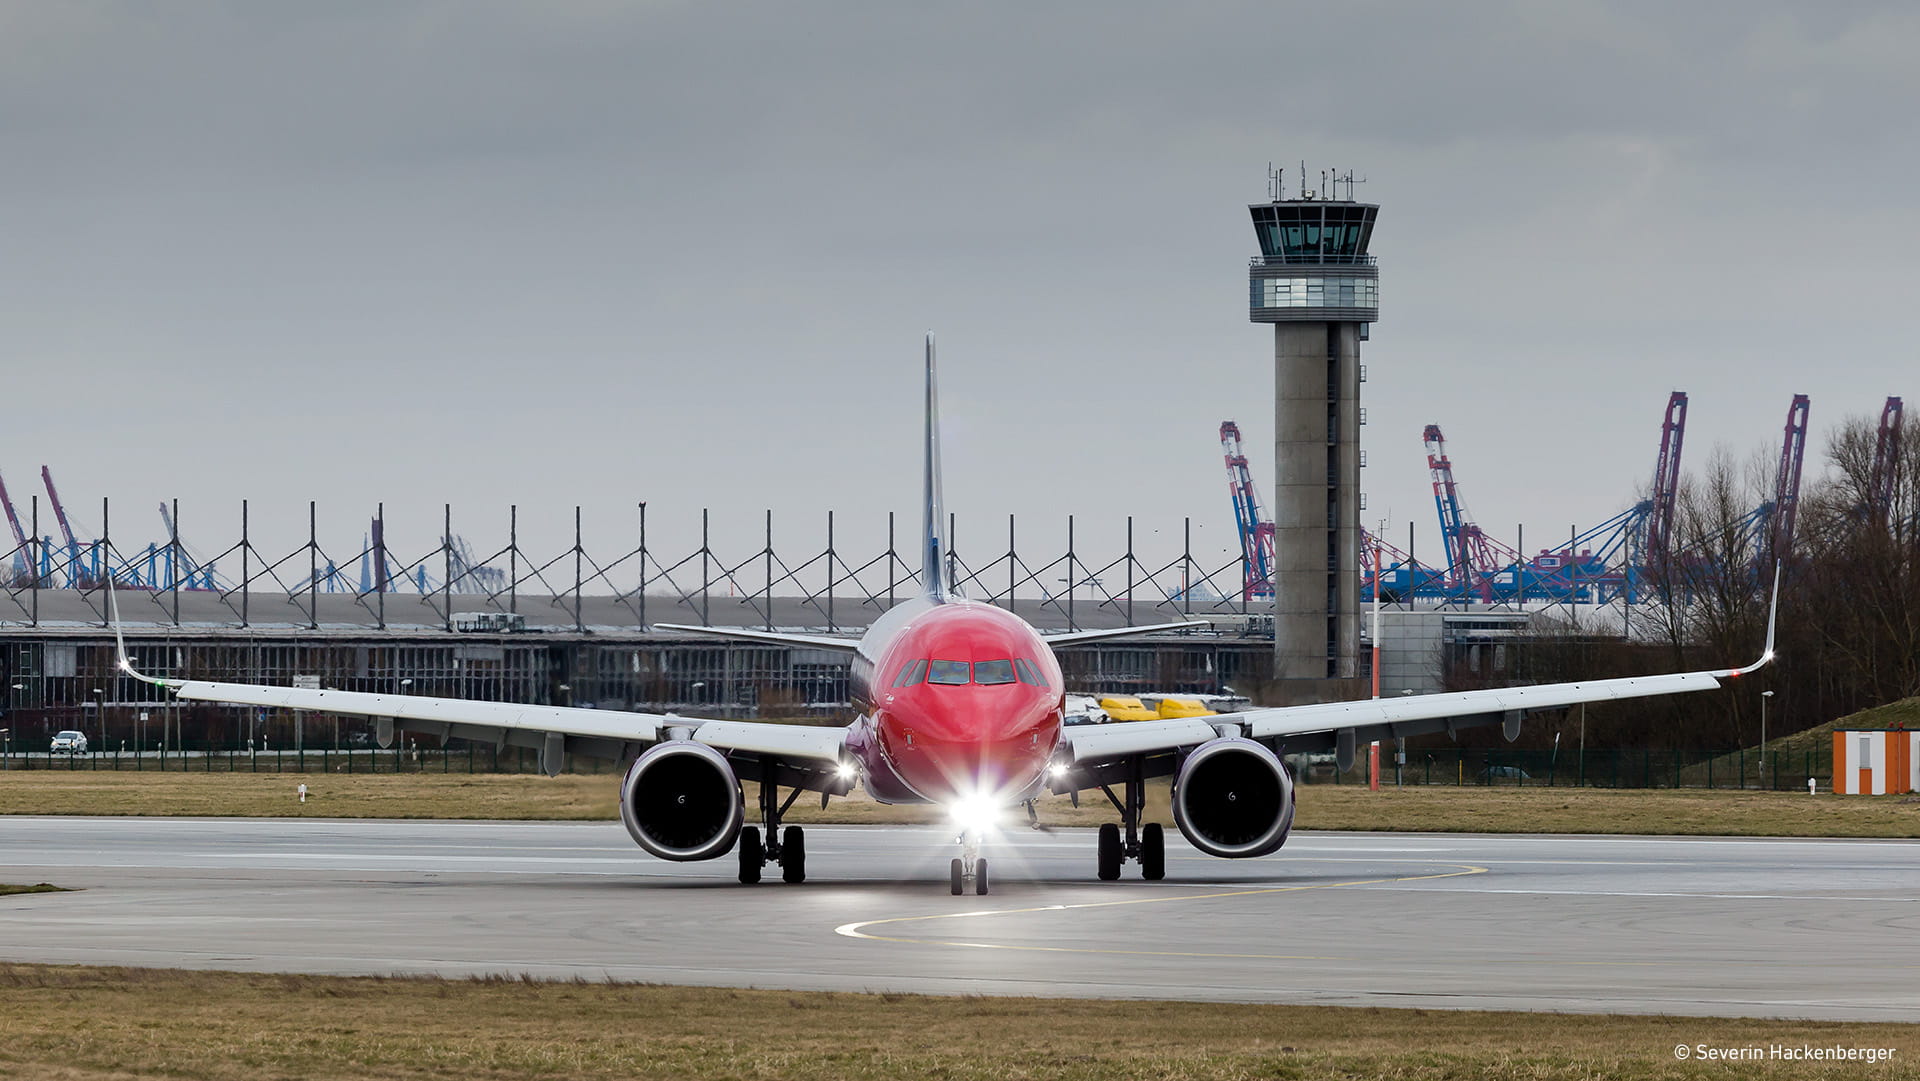 Airbus A320 at airport runway